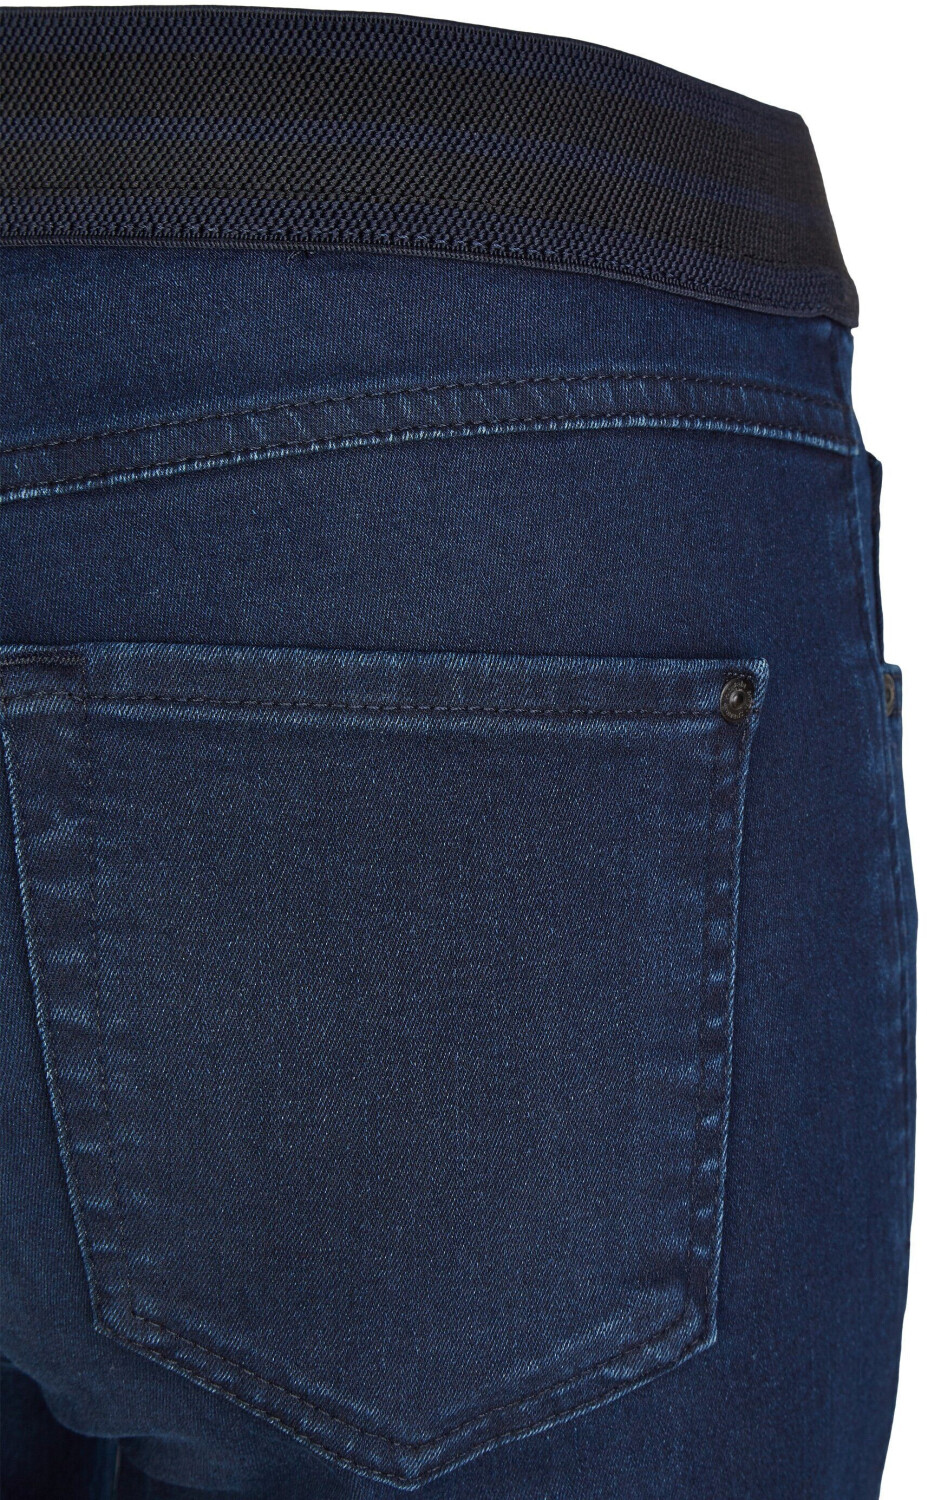 Angels Jeans One Size Fits All dark indigo used ab 82,32 € | Preisvergleich  bei